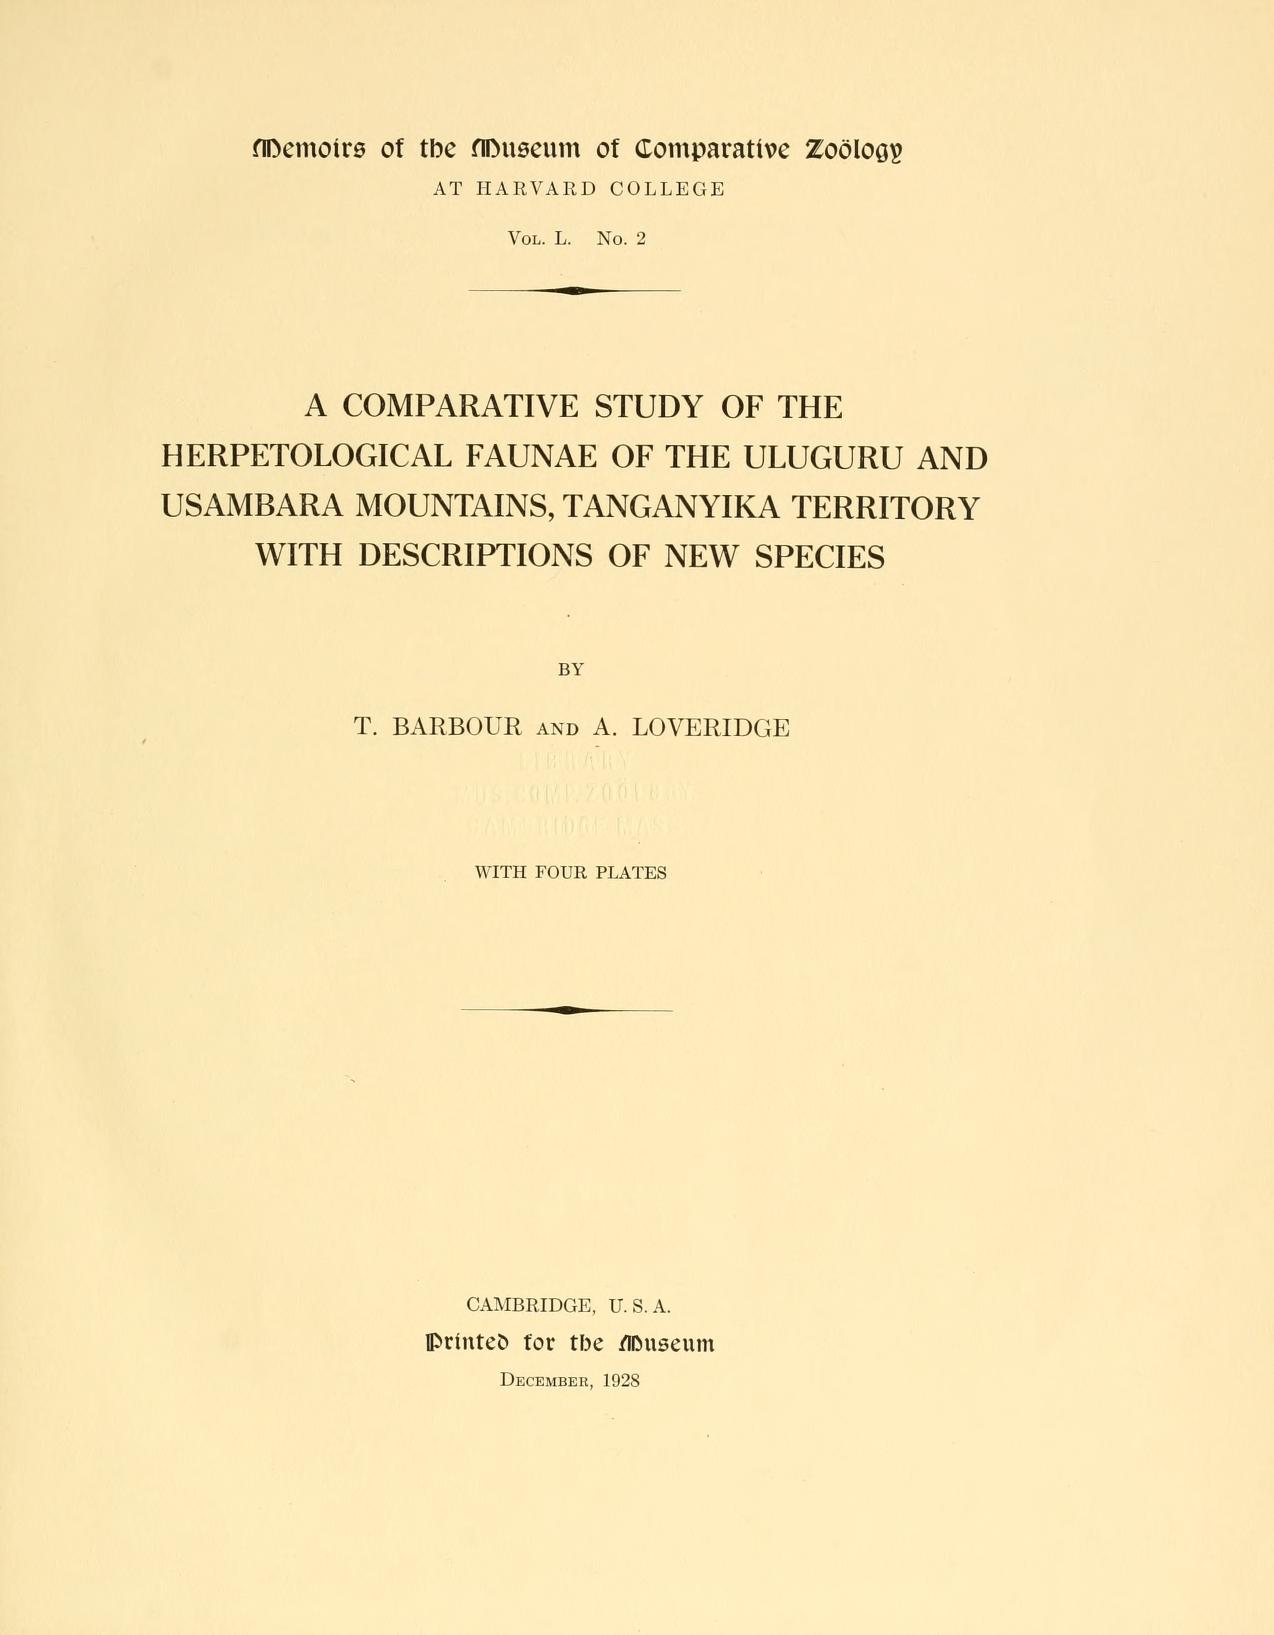 Media type: text, Barbour and Loveridge 1928. Description: MCZ Memoirs Vol. L No. 2